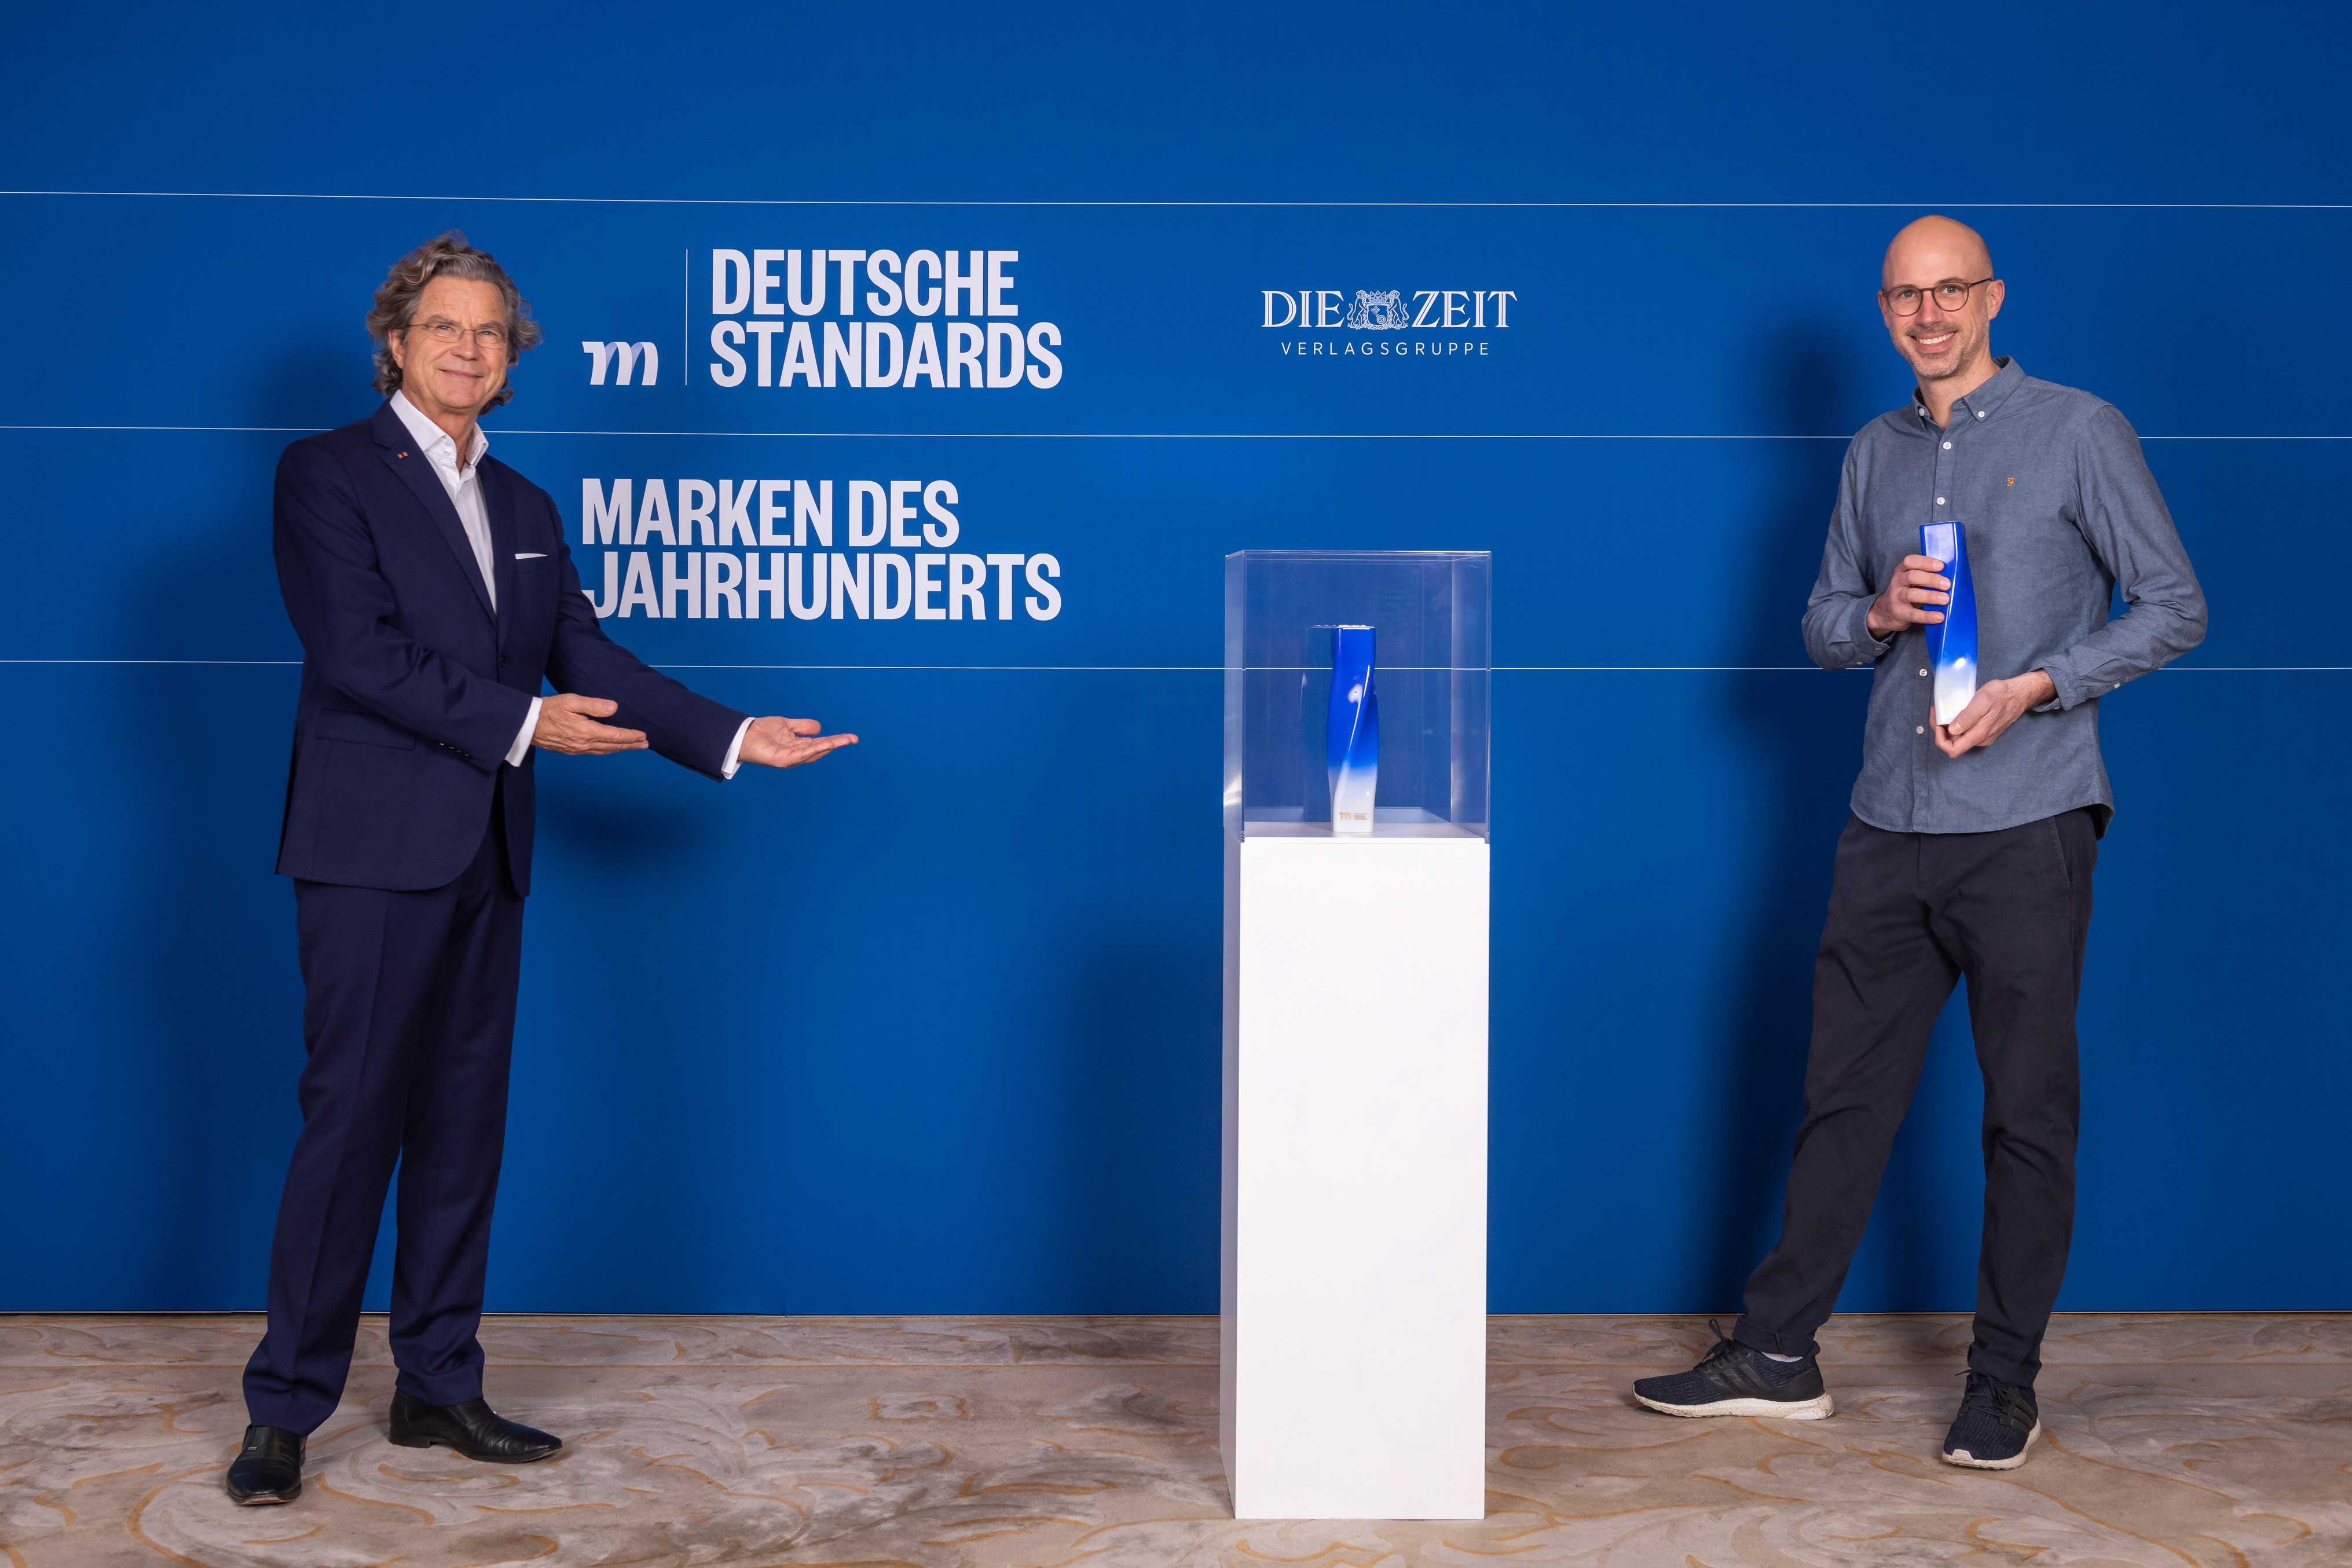 Seeberger wird ausgezeichnet mit "Marke des Jahrhunderts" 2022